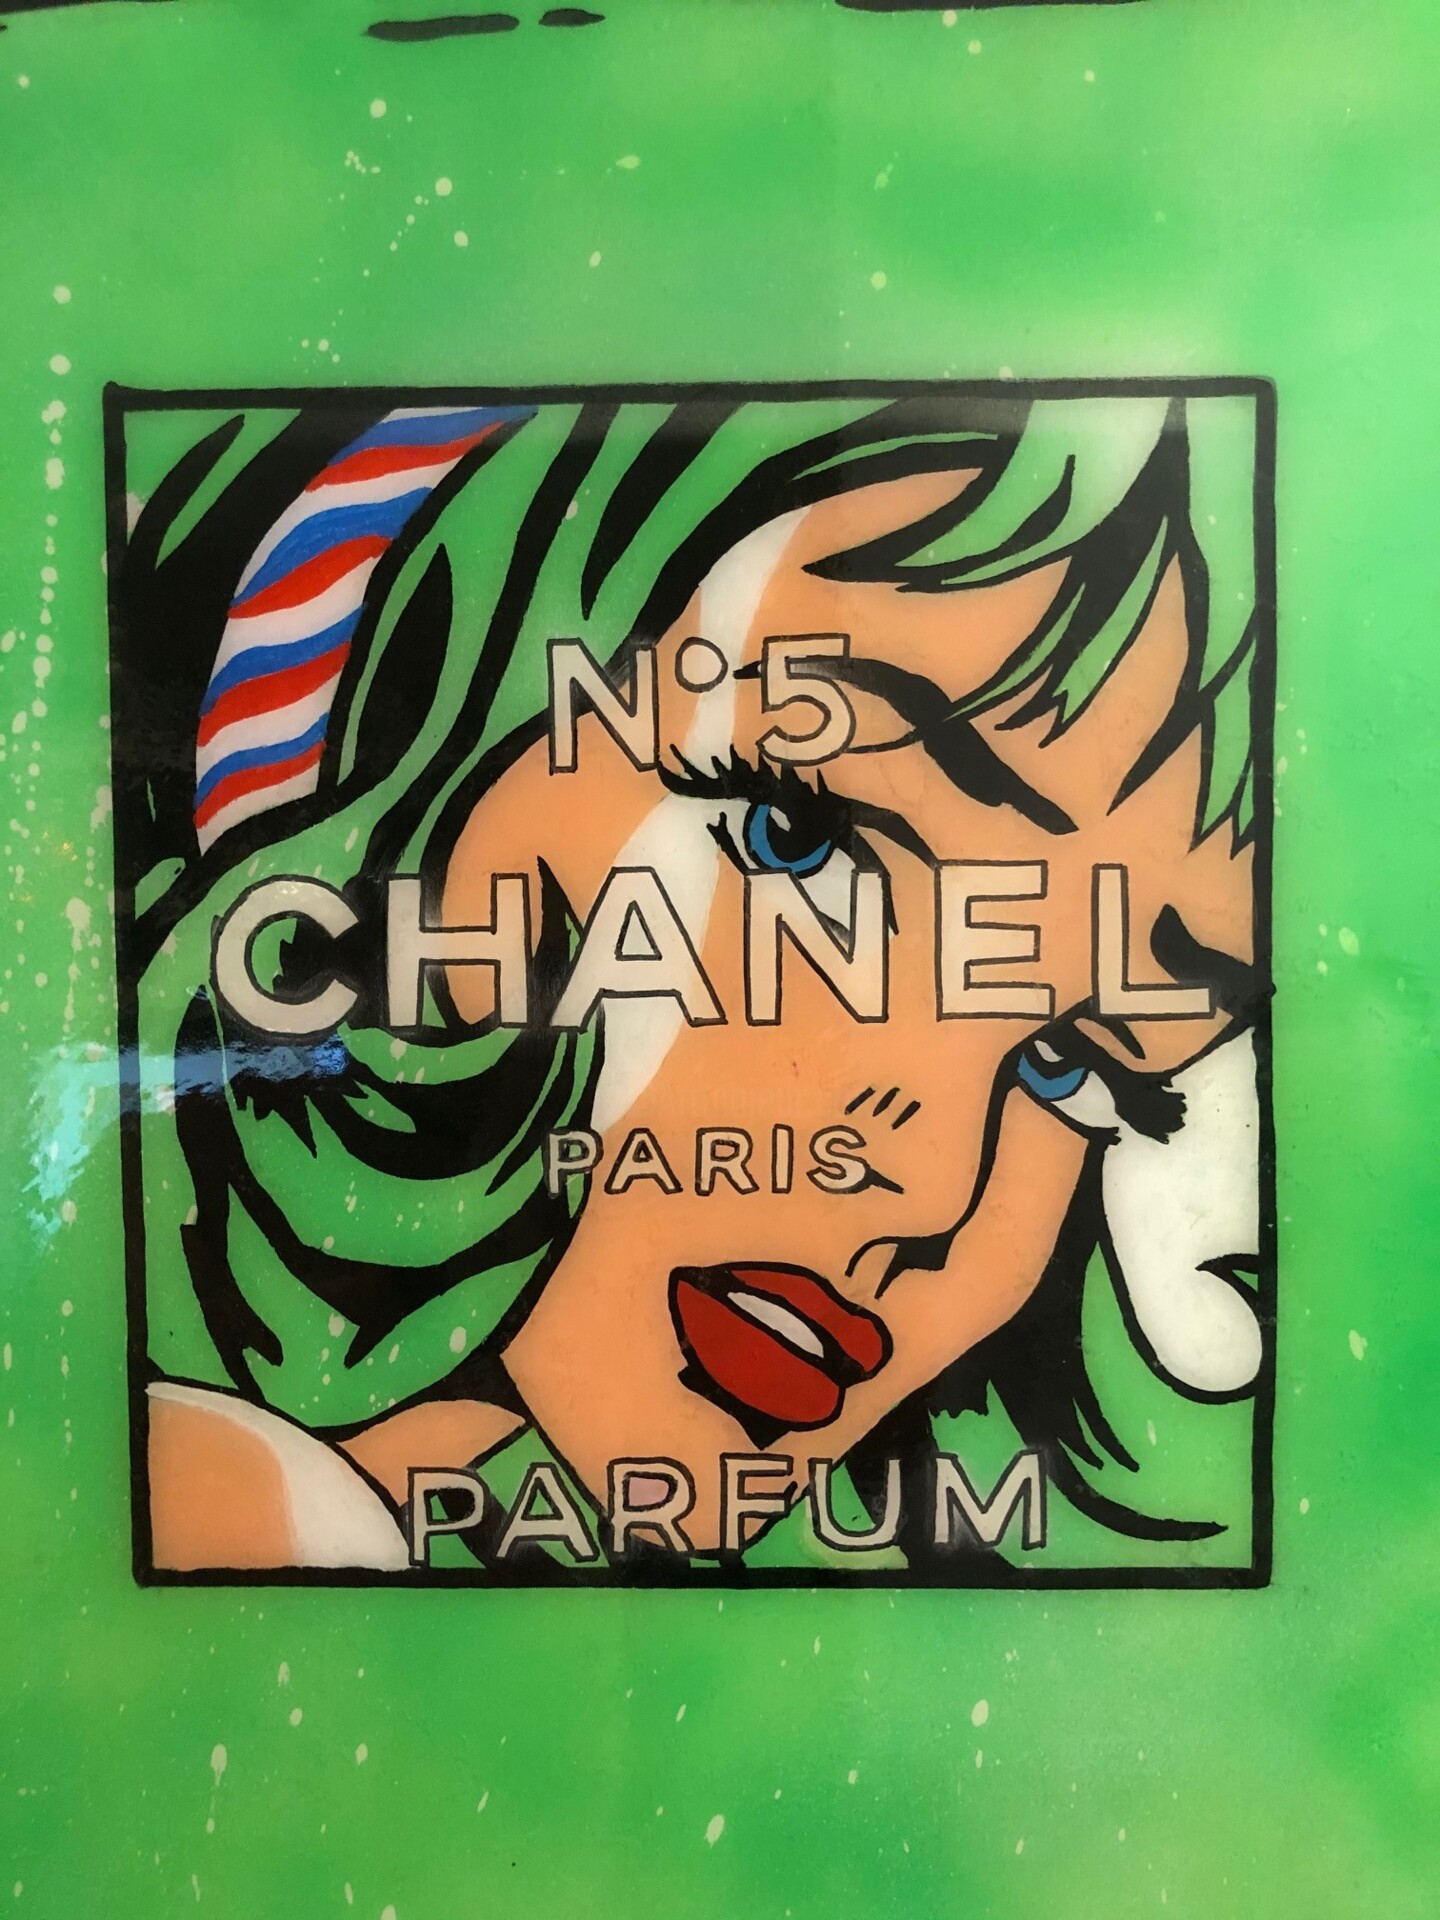 Chanel N.5 Roy - Green Lichtenstein Edit, Sculpture by Simone De